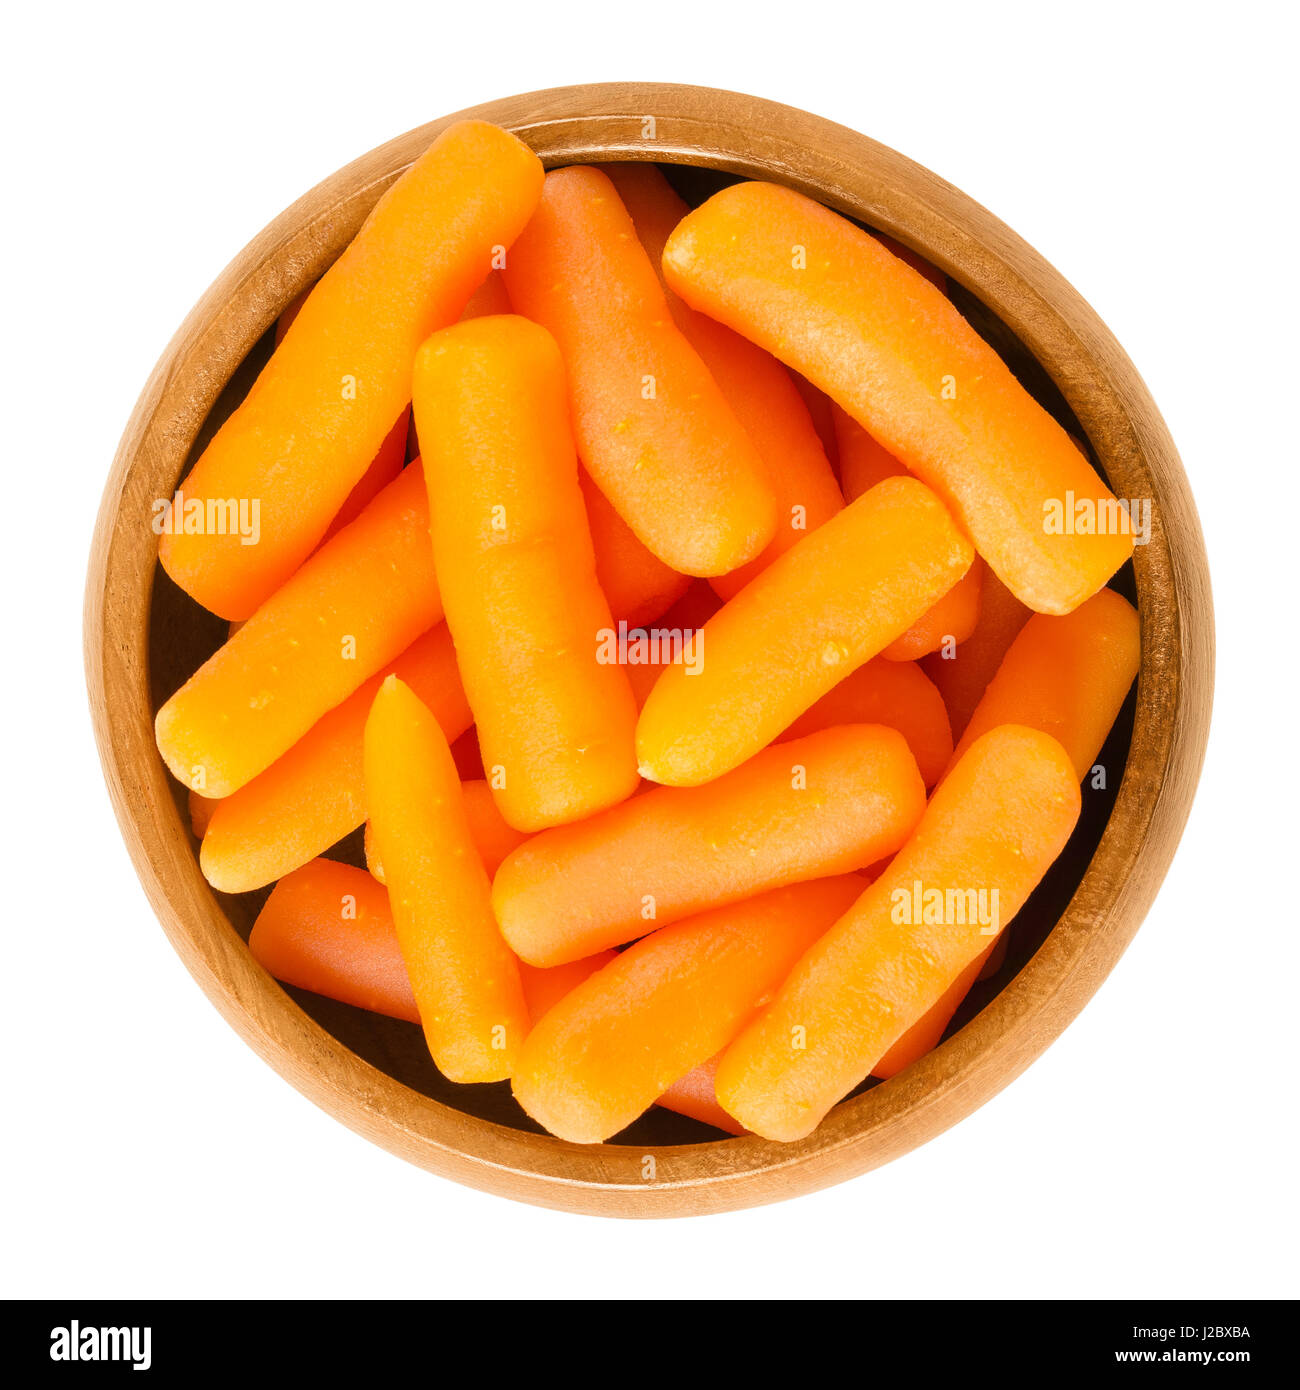 Zanahorias Baby en el tazón de madera. De tamaño pequeño y cocidas zanahorias inmaduras. Hortalizas de raíz con el color naranja. Daucus carota. Fotografía macro aislados. Foto de stock